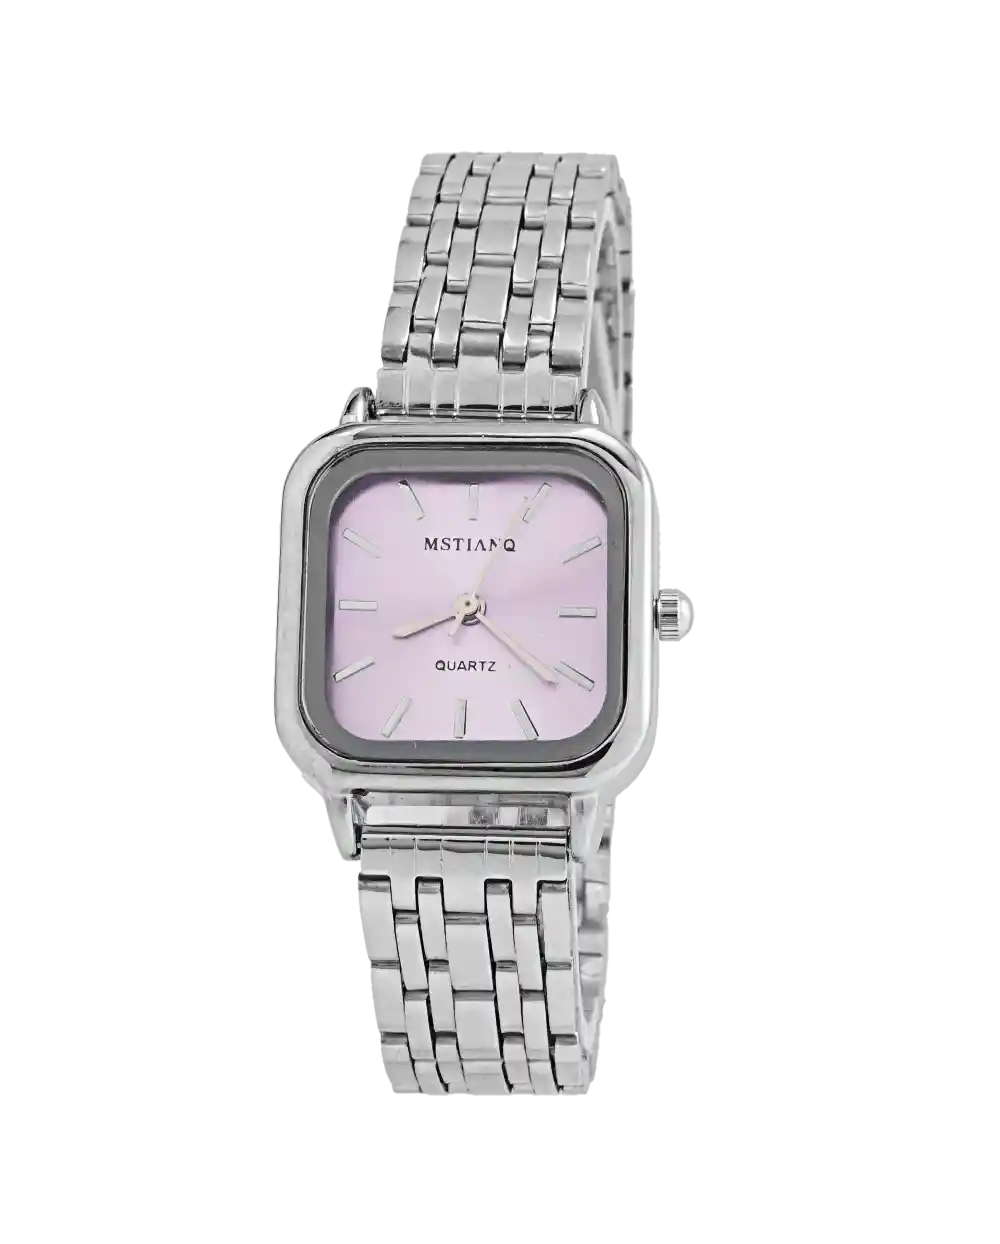 خرید ساعت مچی زنانه MSTIANQ مدل 1806 صفحه یاسی قیمت 470 هزارتومان به همراه ارسال رایگان و جعبه ی کادویی | مناسب برای خانم ها ی خوش سلیقه